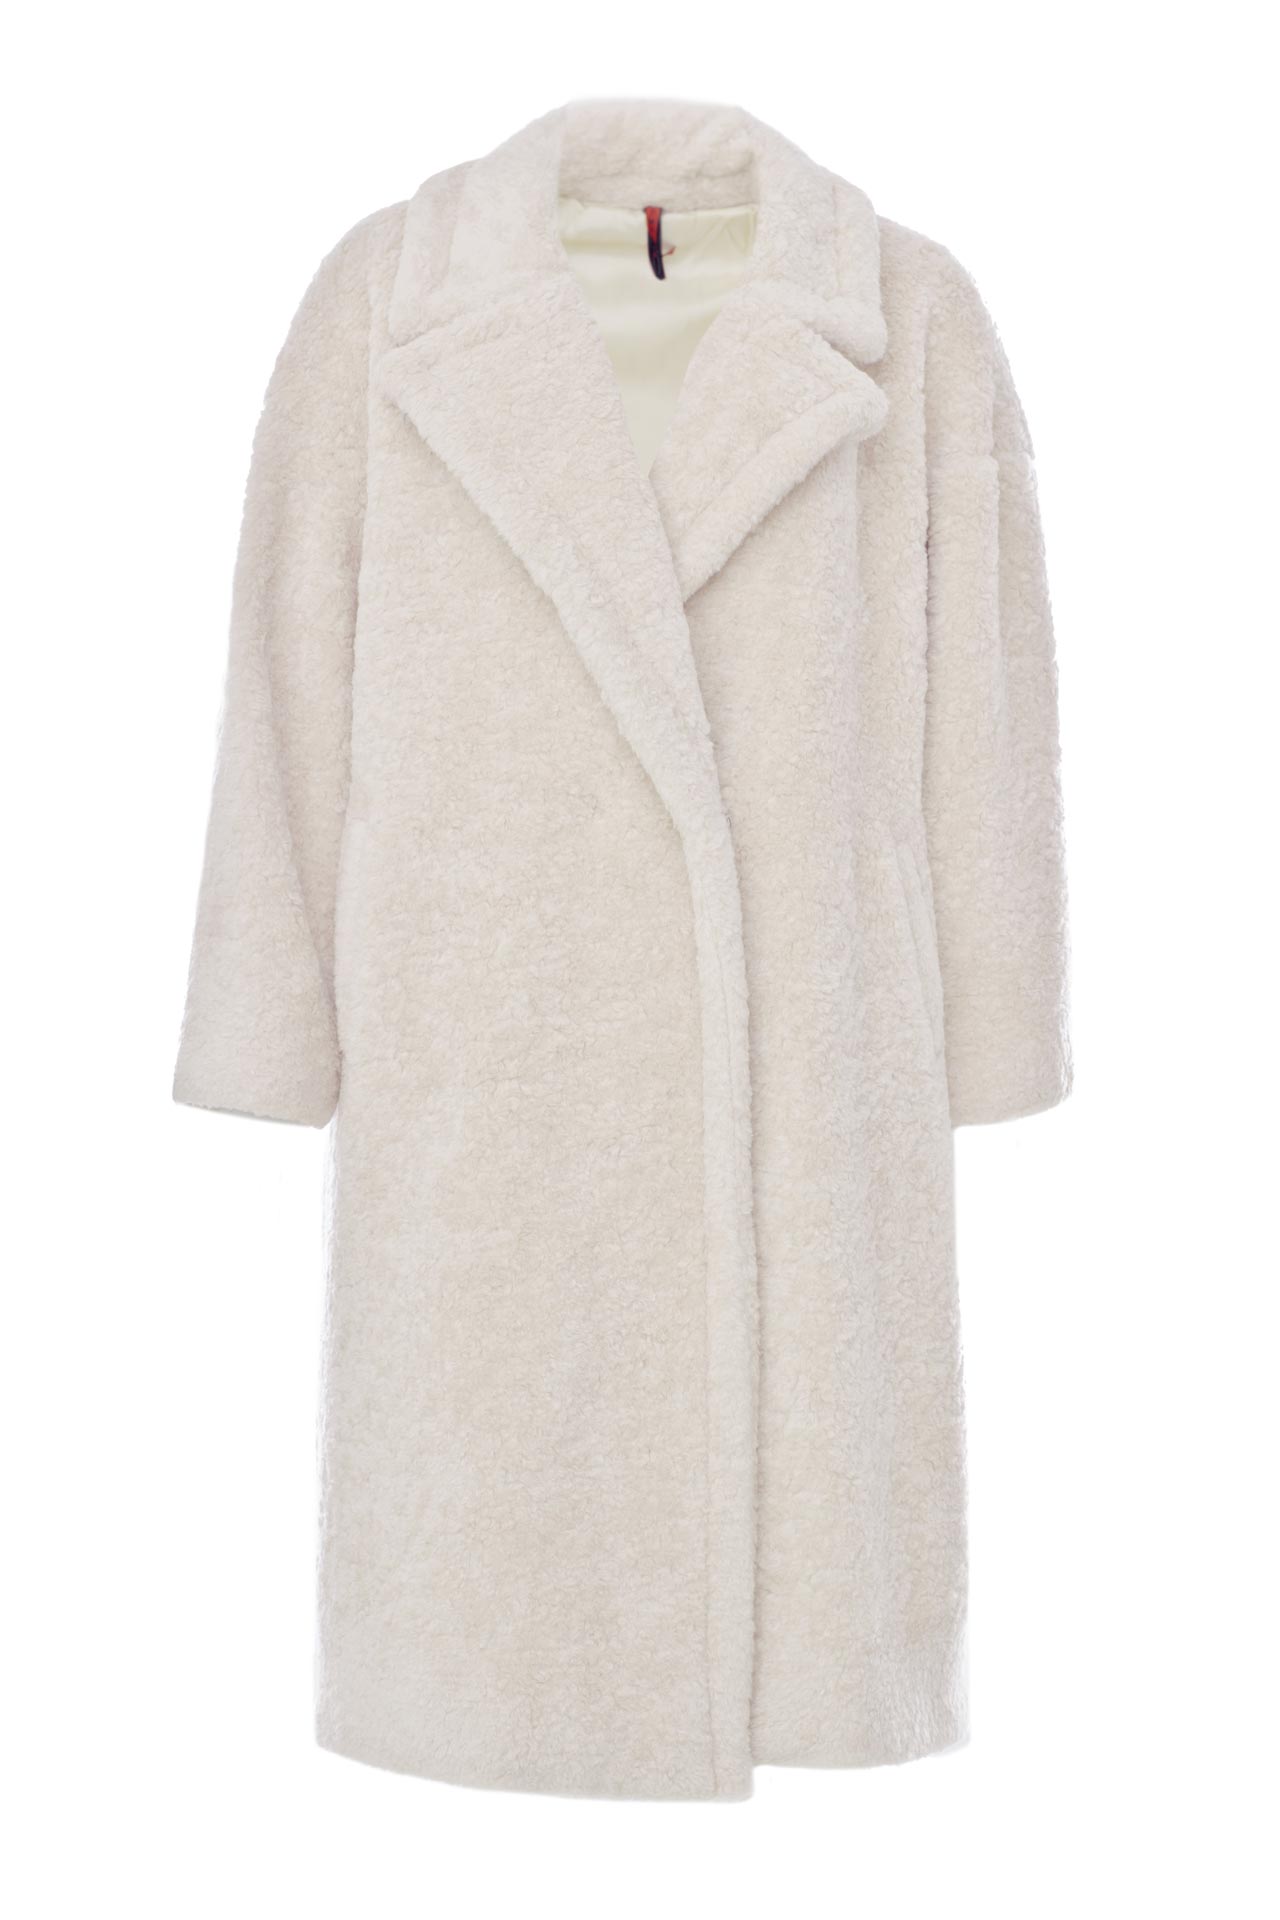 Одежда женская Пальто IMPERIAL (KF45WKL/18.1). Купить за 15900 руб.